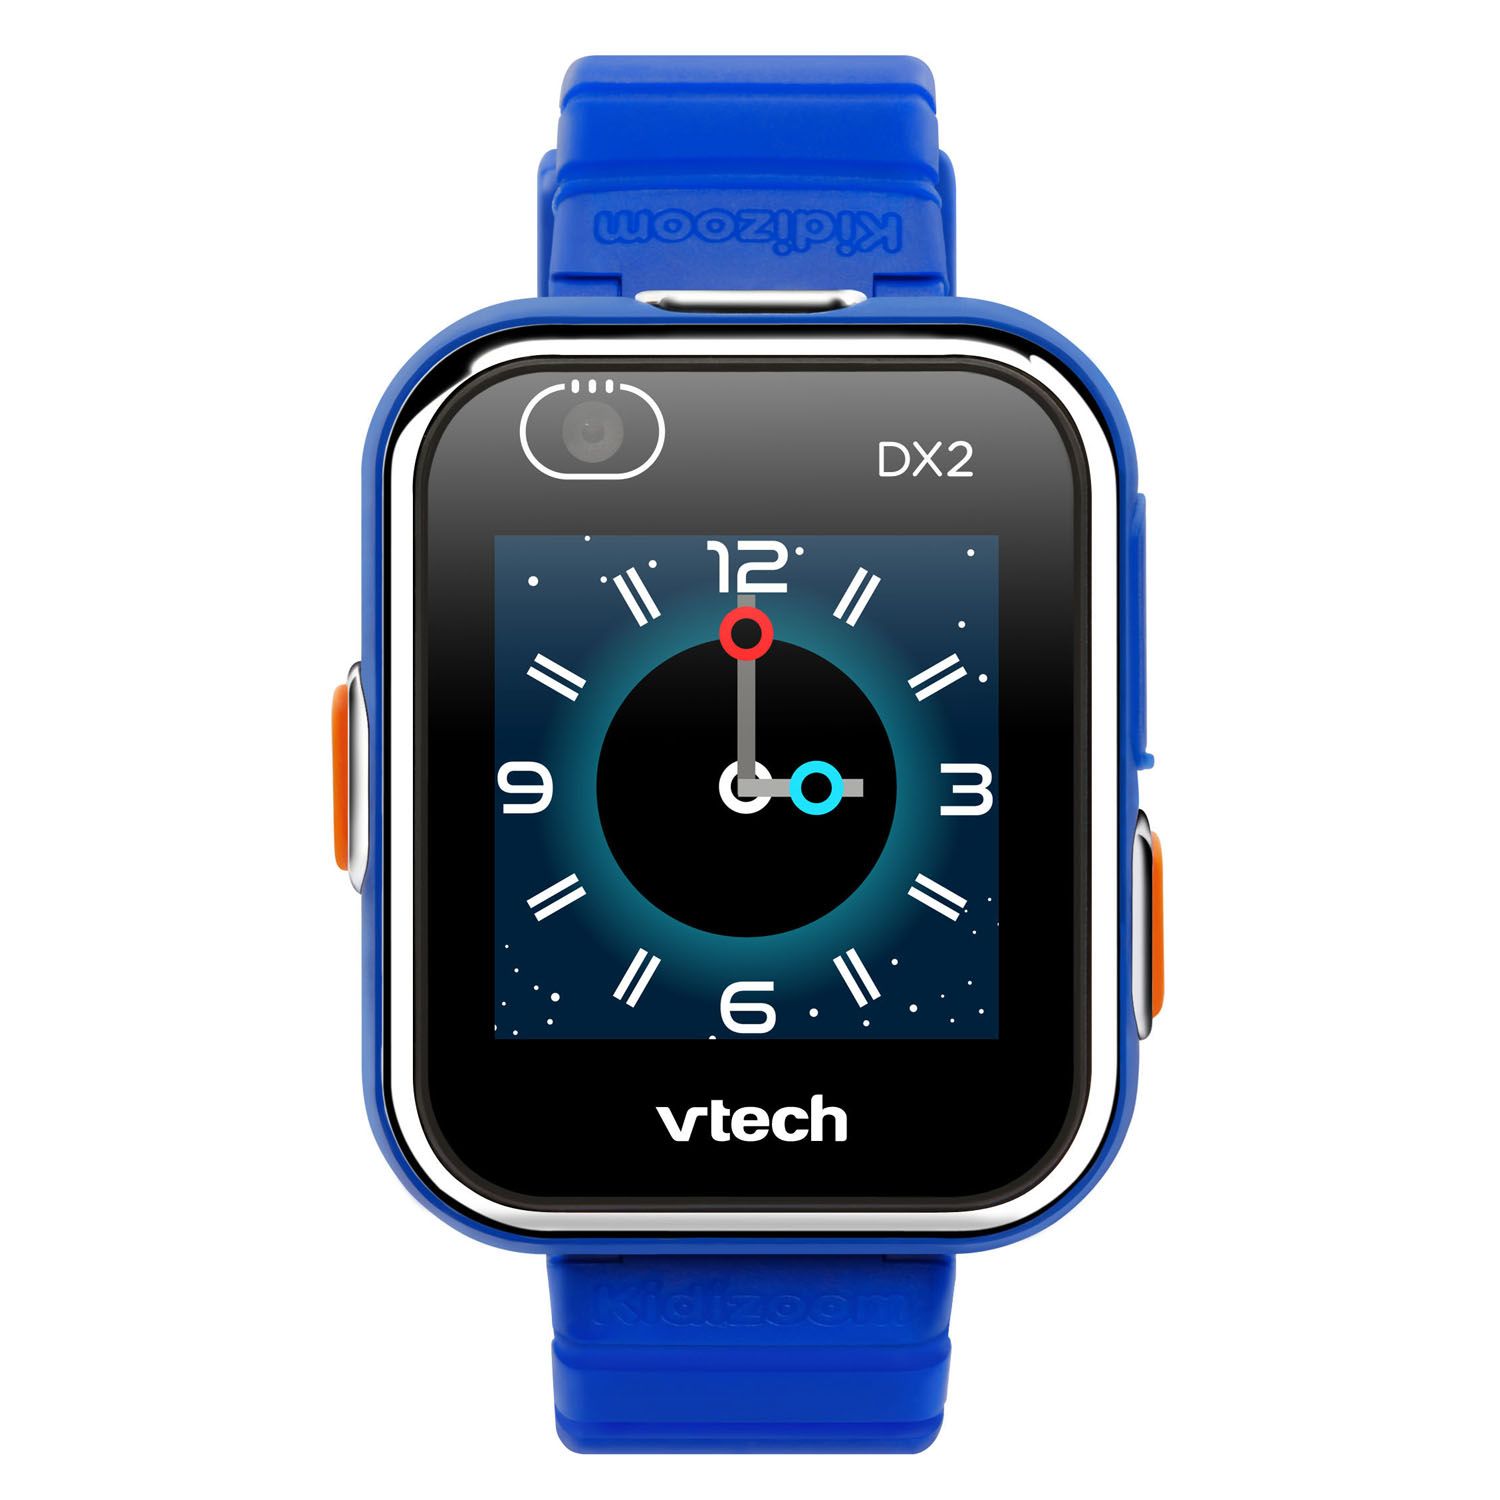 ads vtech smart watch